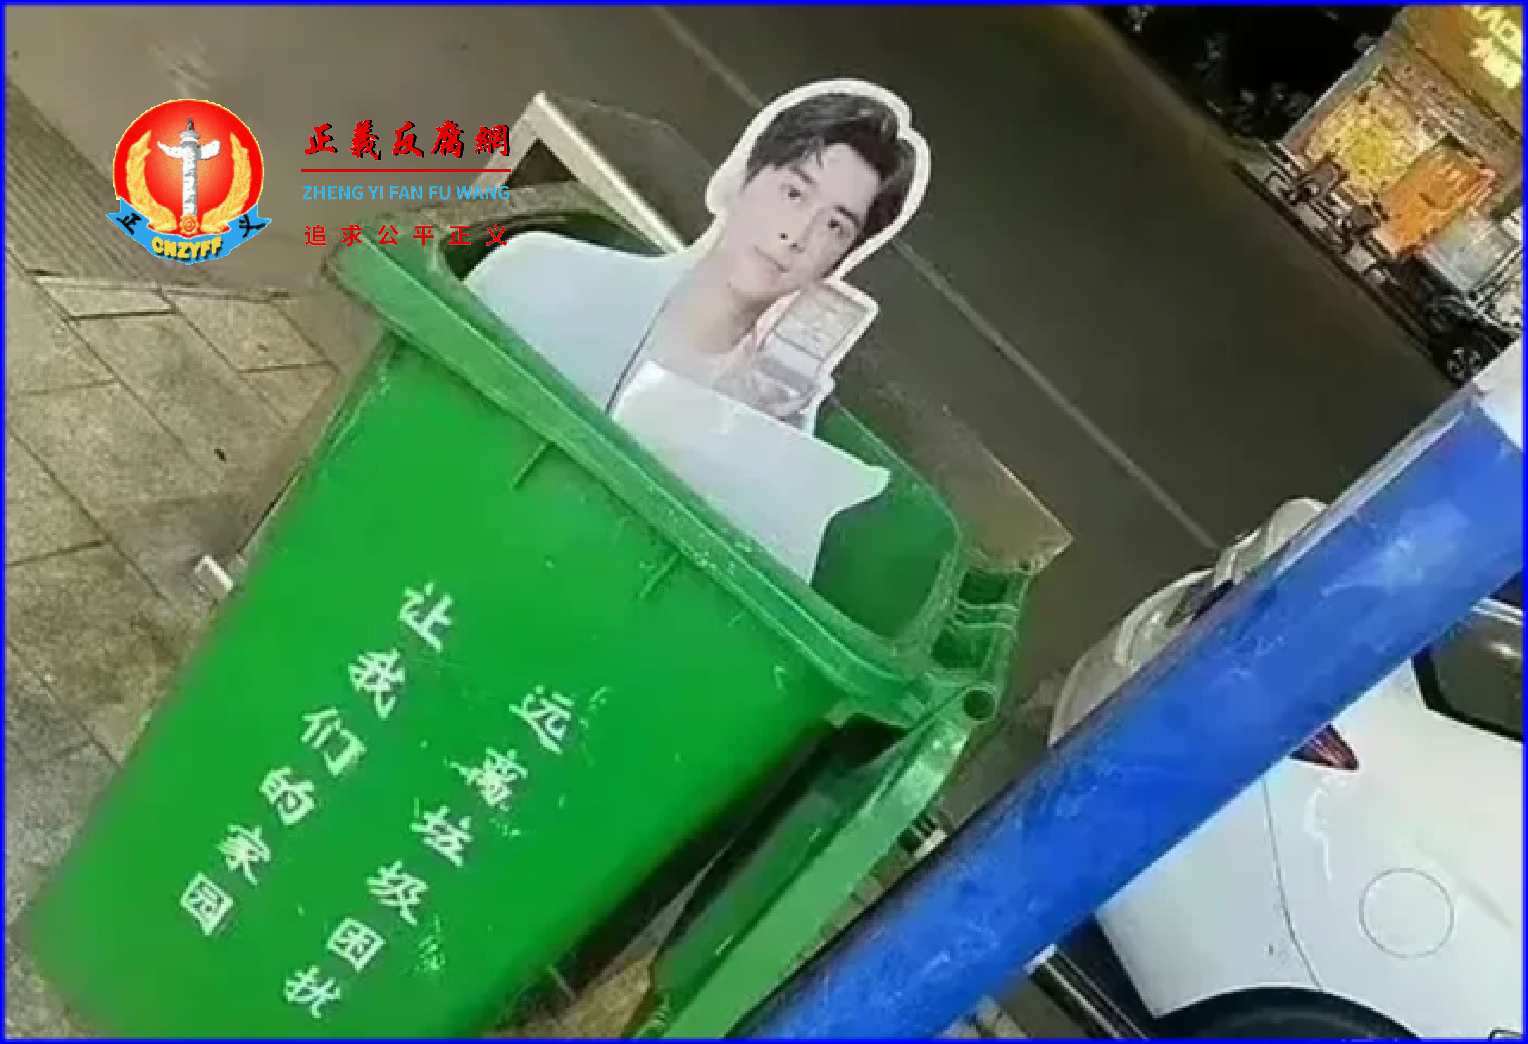 手机店门口的人形广告牌也被撕下扔进了垃圾桶。.png